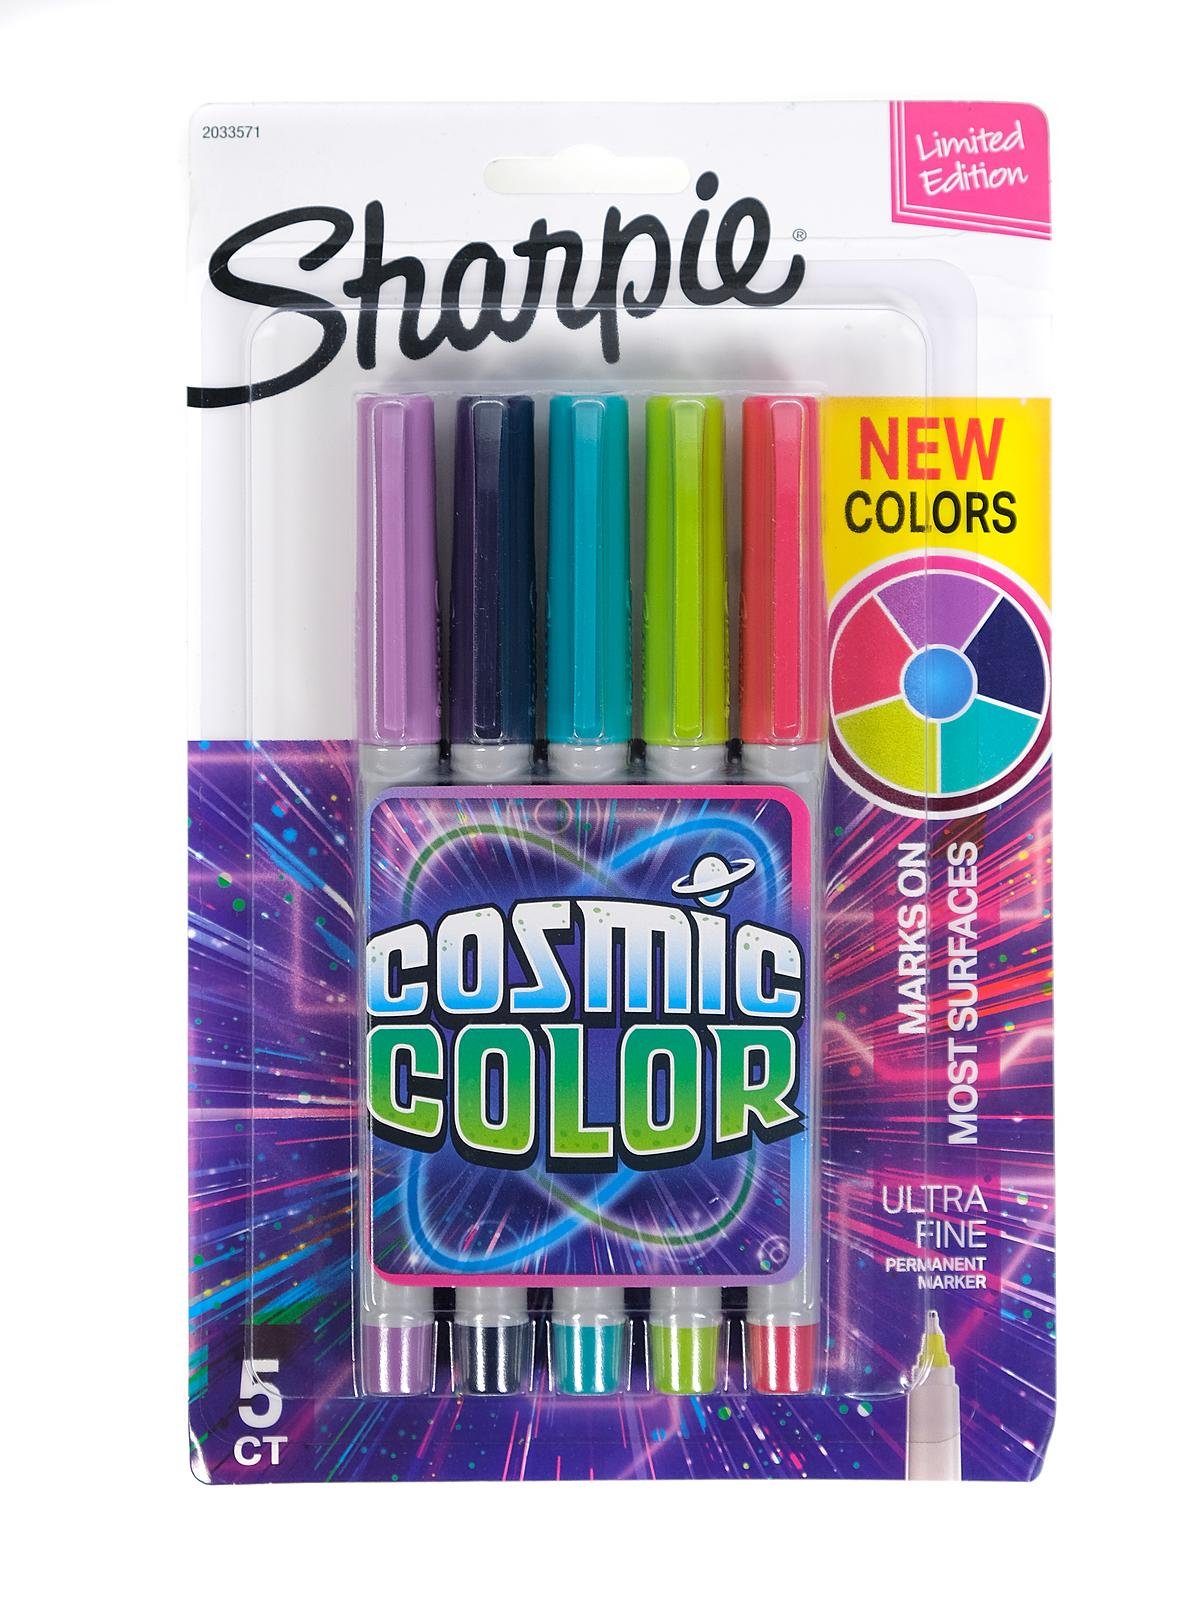 Sharpie Cosmic Color